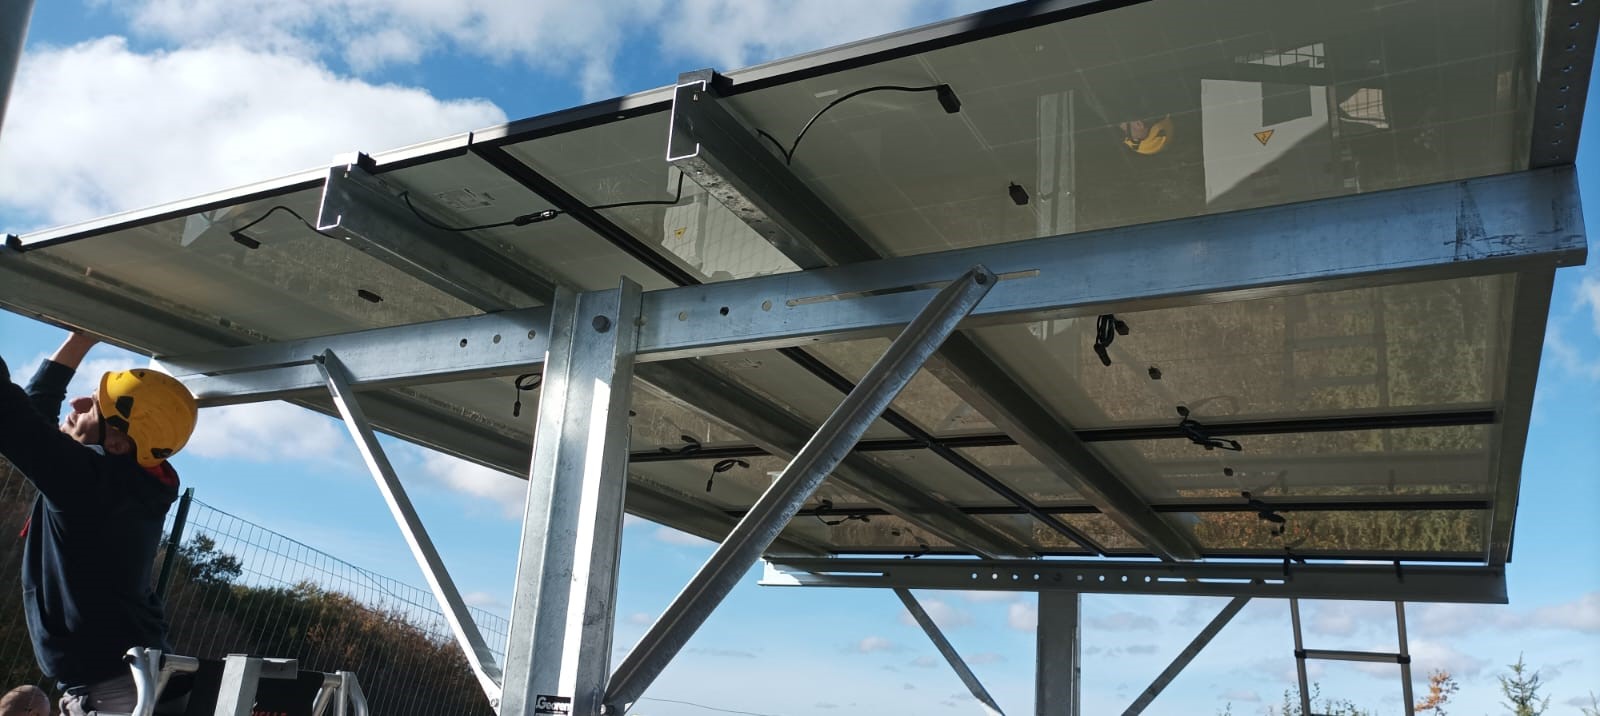 installation panneaux photovoltaiques